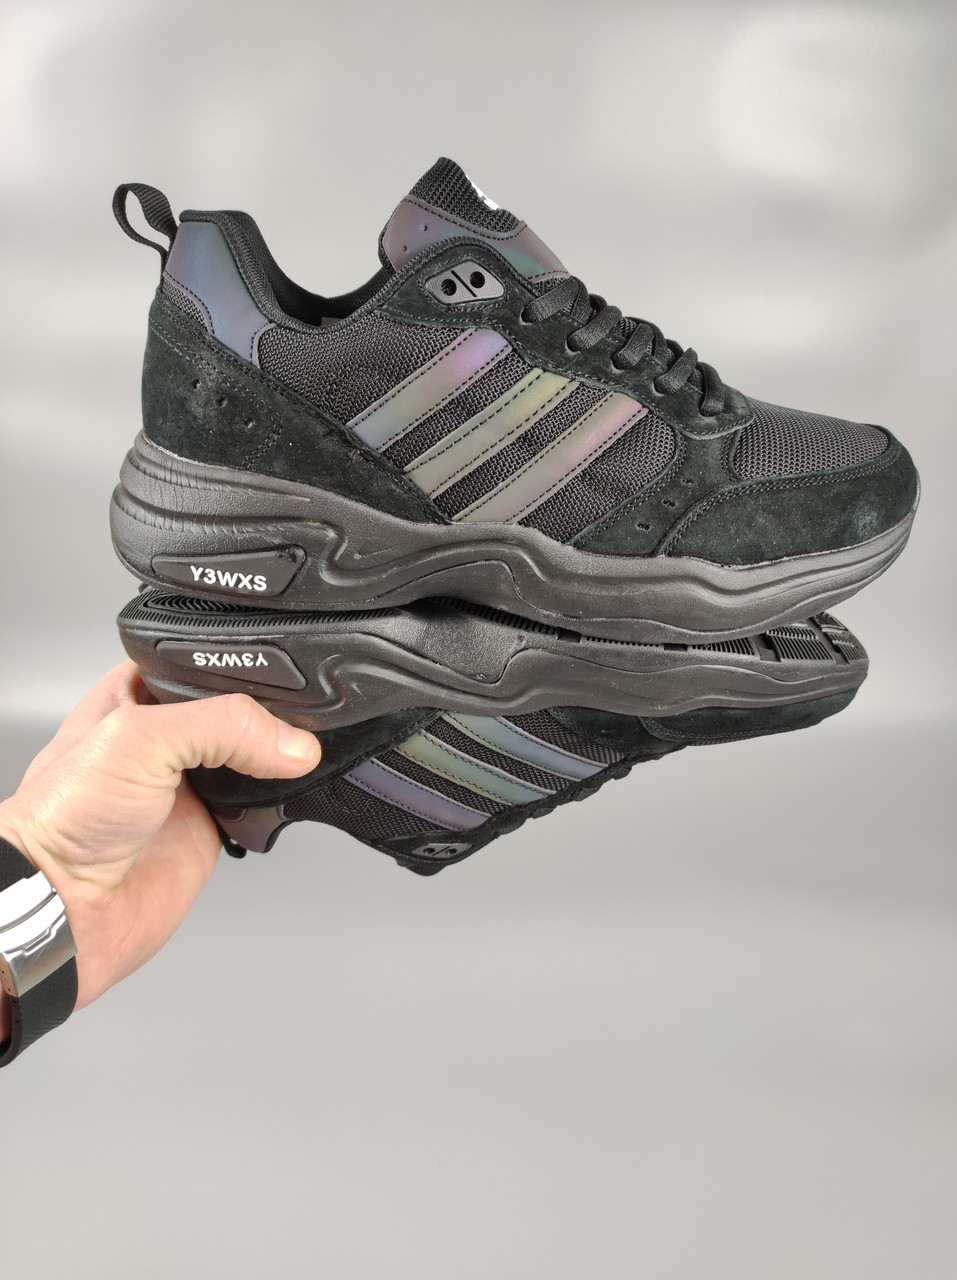 Чоловічі кросівки Adidas Y3WXS Neon Black